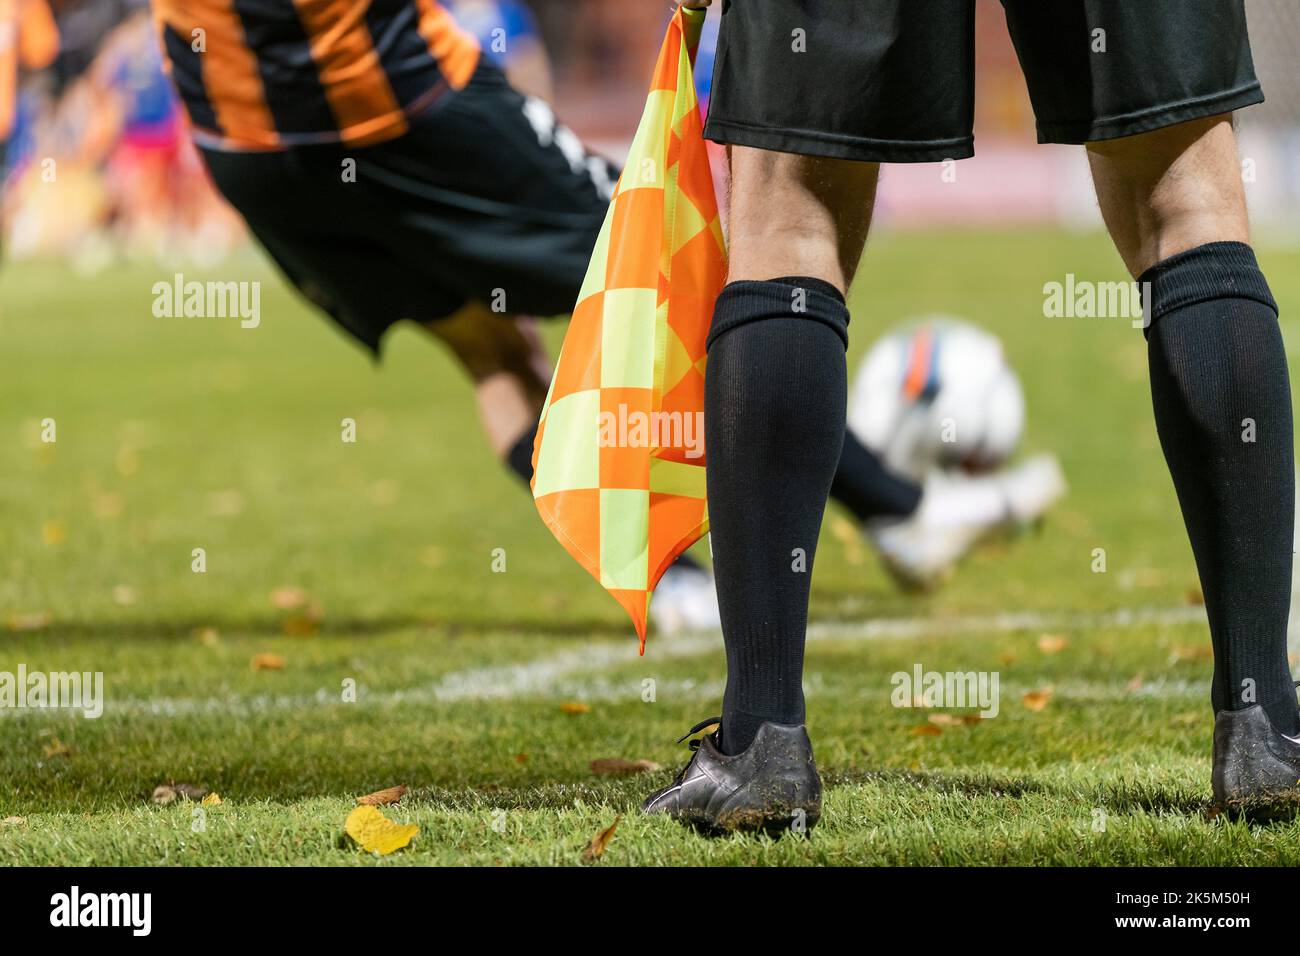 Le footballeur prend le virage. Détail des jambes de l'arbitre pendant le match de football. Banque D'Images